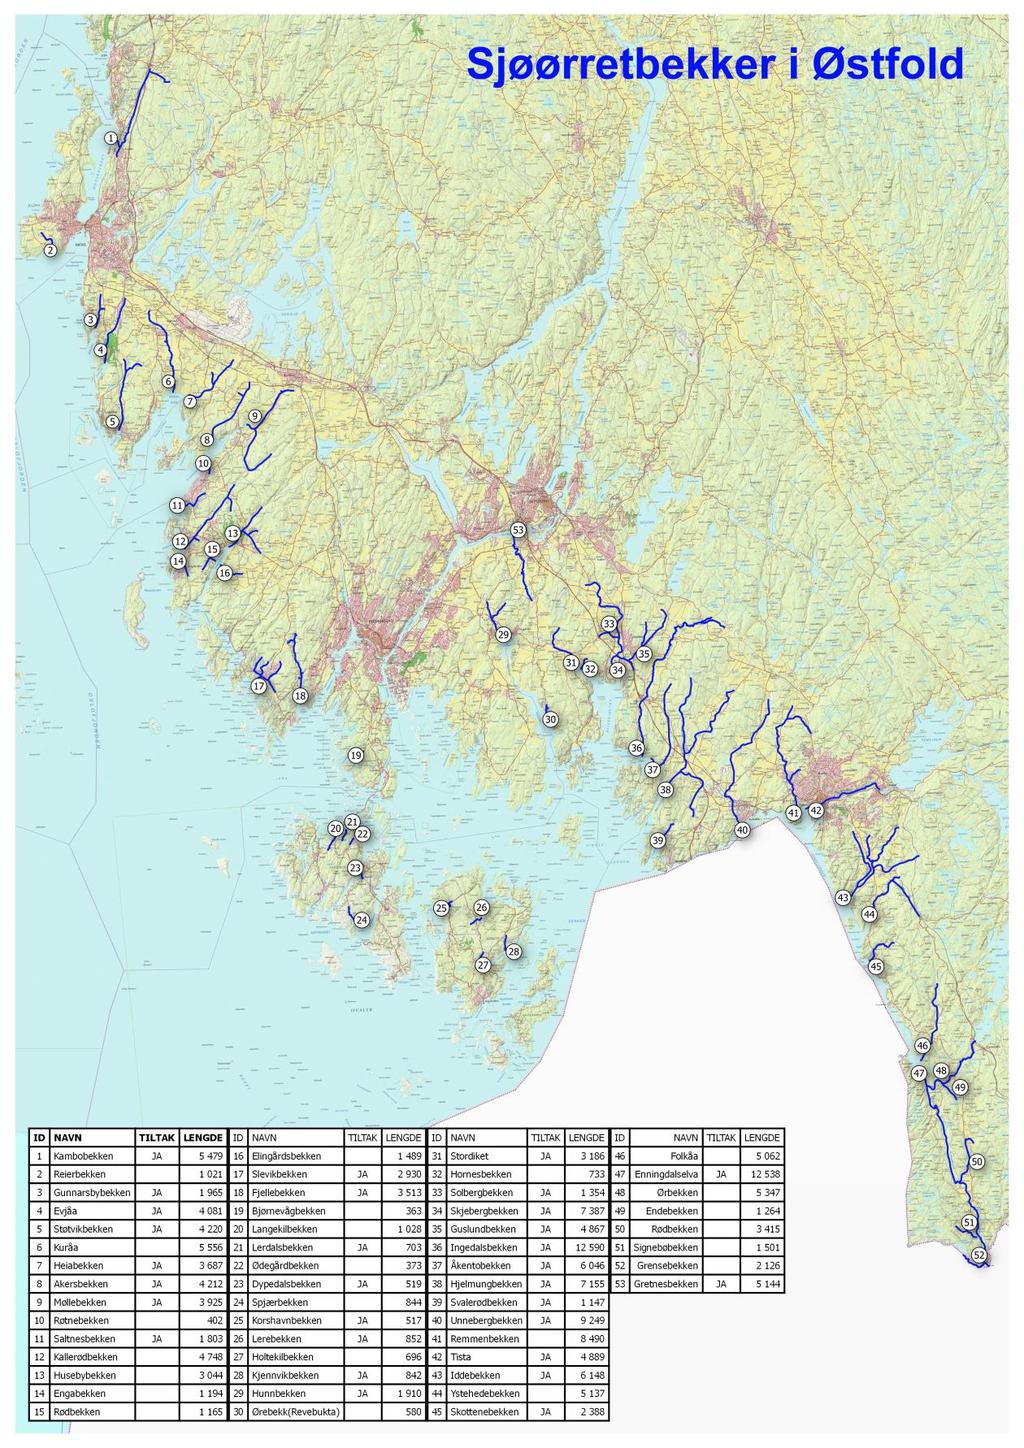 Vedlegg: Kart over vassdrag/bekker med sjøørret i Østfold.